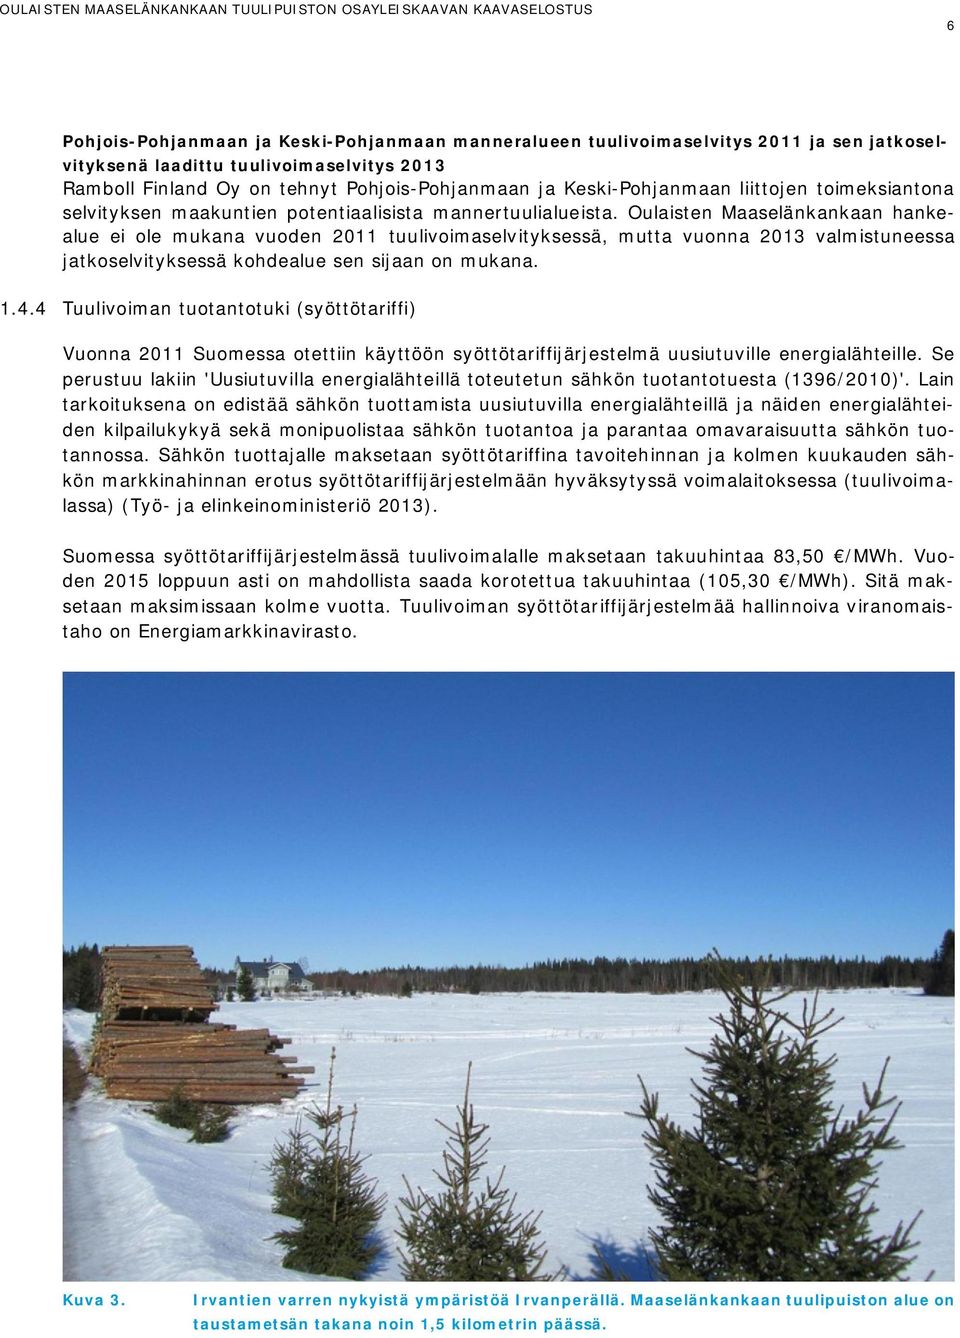 Oulaisten Maaselänkankaan hankealue ei ole mukana vuoden 2011 tuulivoimaselvityksessä, mutta vuonna 2013 valmistuneessa jatkoselvityksessä kohdealue sen sijaan on mukana. 1.4.